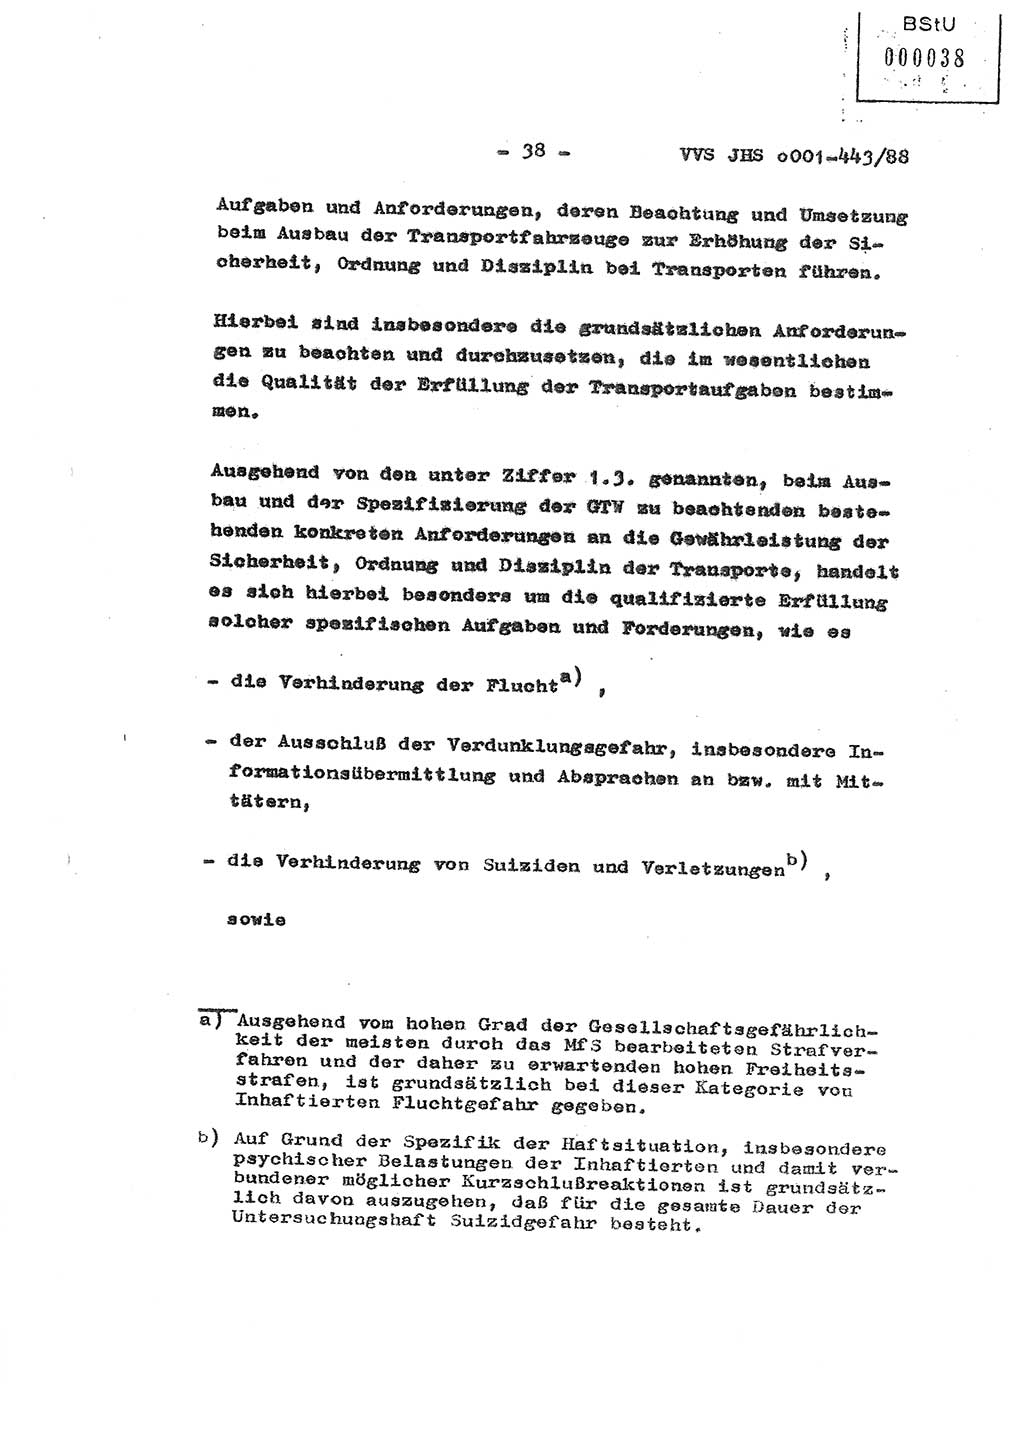 Diplomarbeit Hauptmann Michael Rast (Abt. ⅩⅣ), Major Bernd Rahaus (Abt. ⅩⅣ), Ministerium für Staatssicherheit (MfS) [Deutsche Demokratische Republik (DDR)], Juristische Hochschule (JHS), Vertrauliche Verschlußsache (VVS) o001-443/88, Potsdam 1988, Seite 38 (Dipl.-Arb. MfS DDR JHS VVS o001-443/88 1988, S. 38)